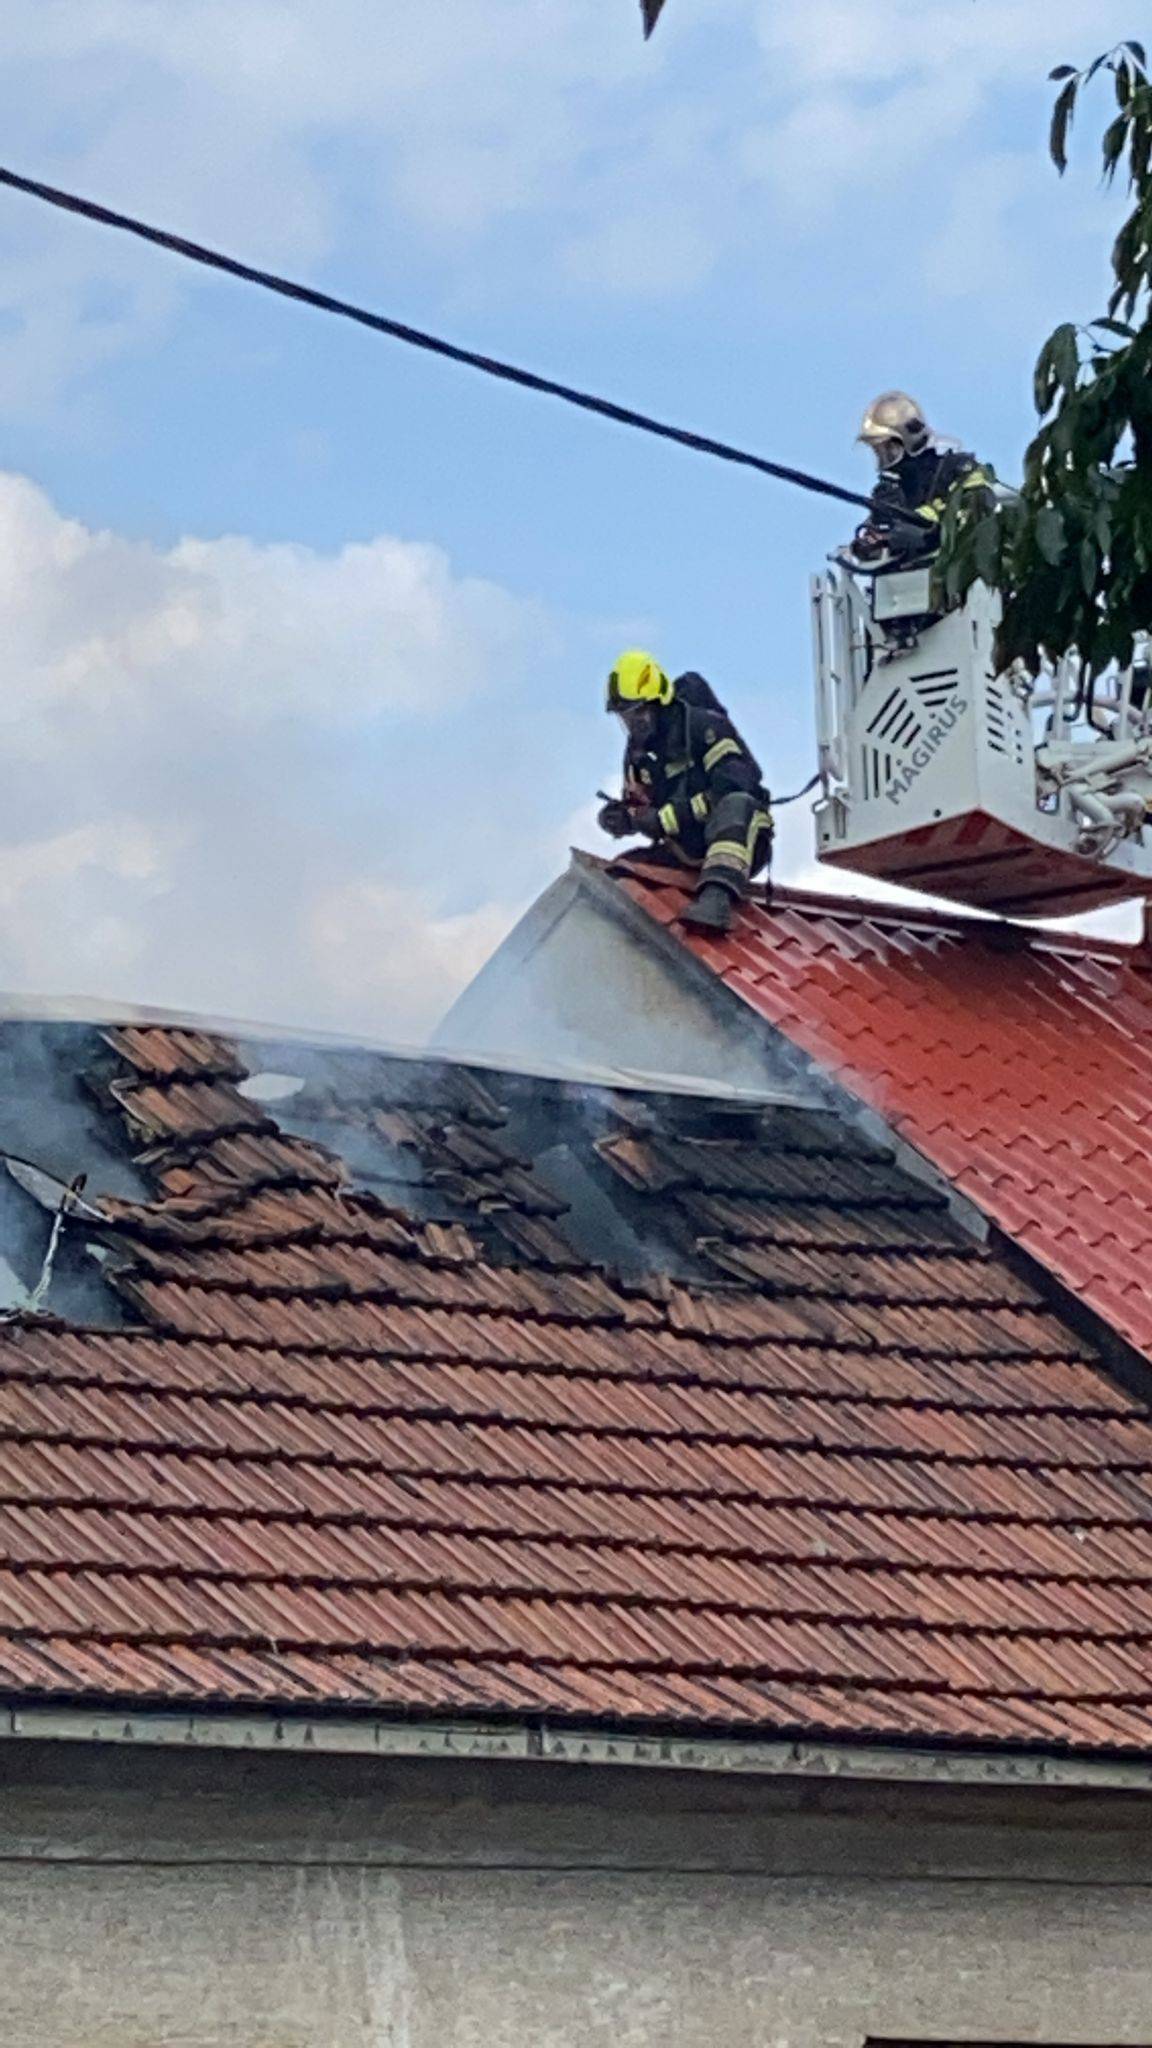 VIDEO Požar kuće u Zagrebu, na terenu vatrogasci: 'Vidio sam dim, zapalio im se i krov kuće'